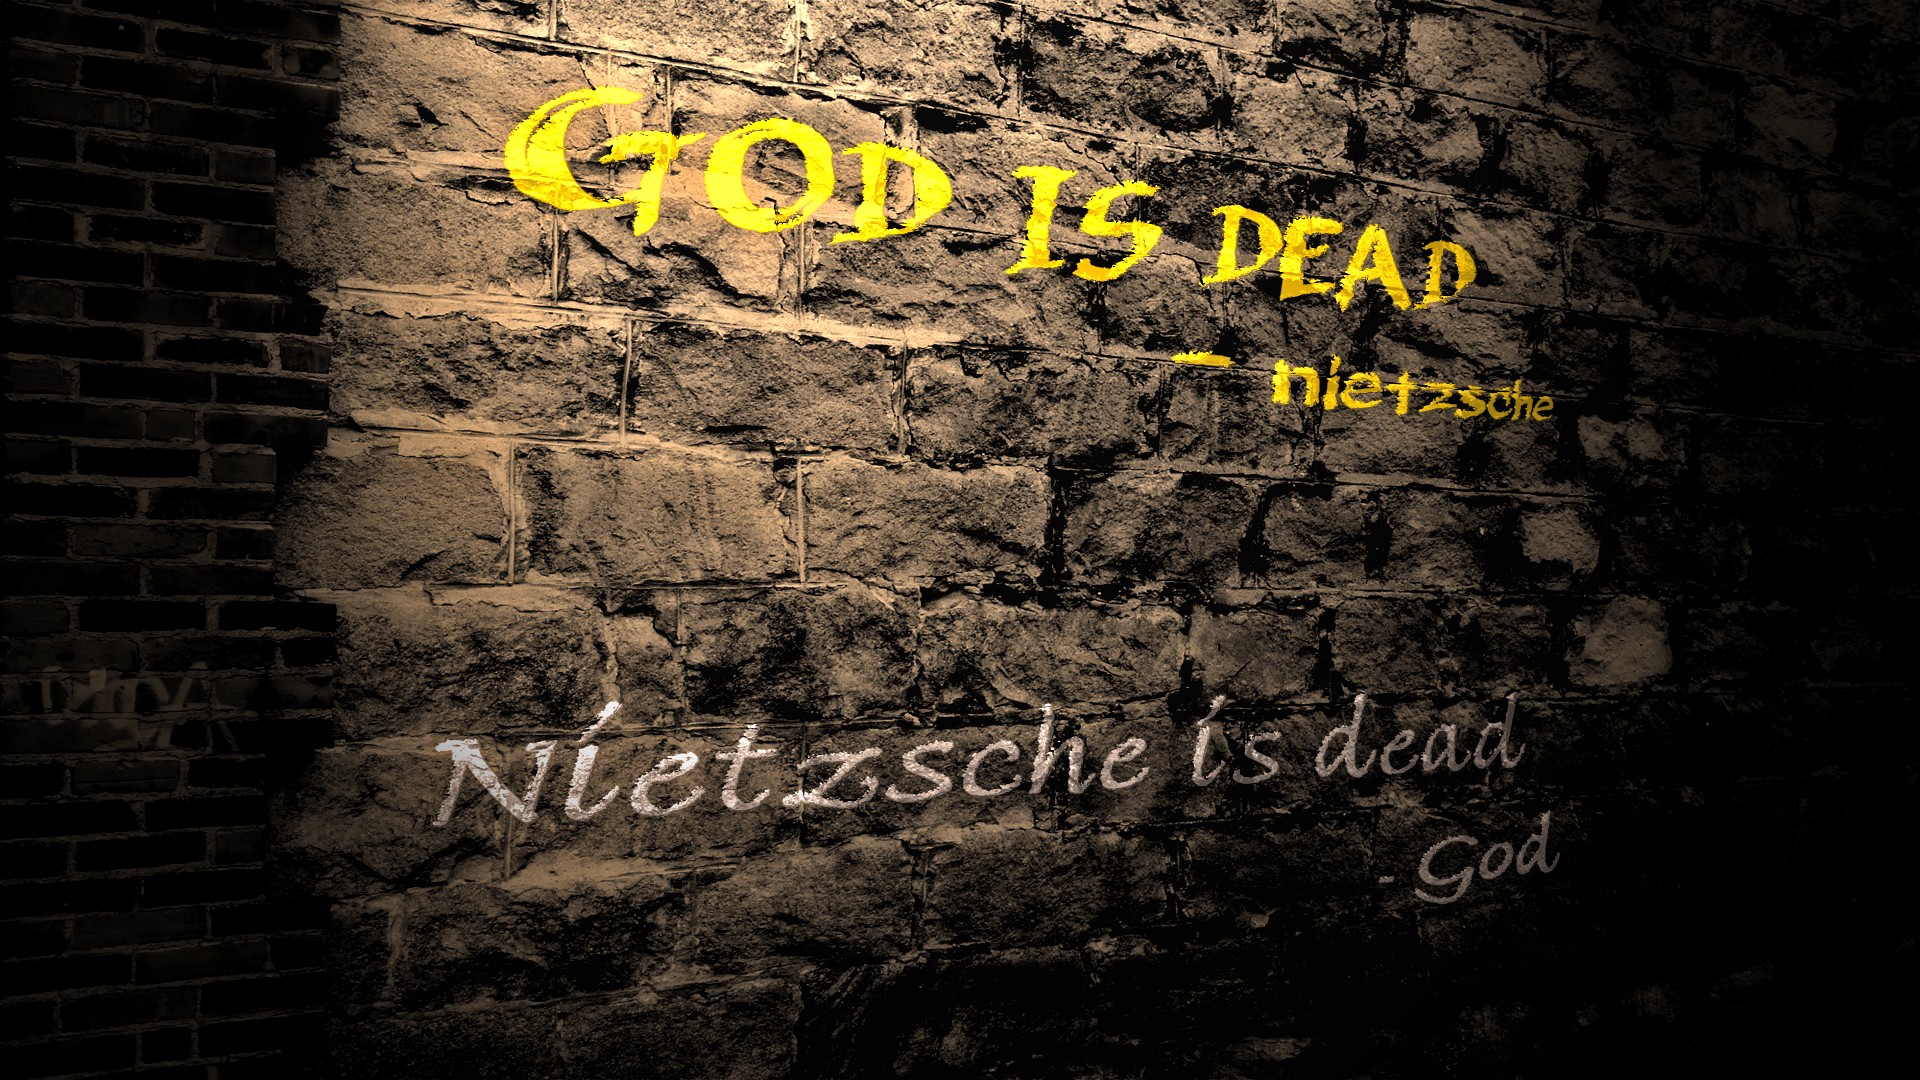 General 1920x1080 God Friedrich Nietzsche quote dark humor humor bricks